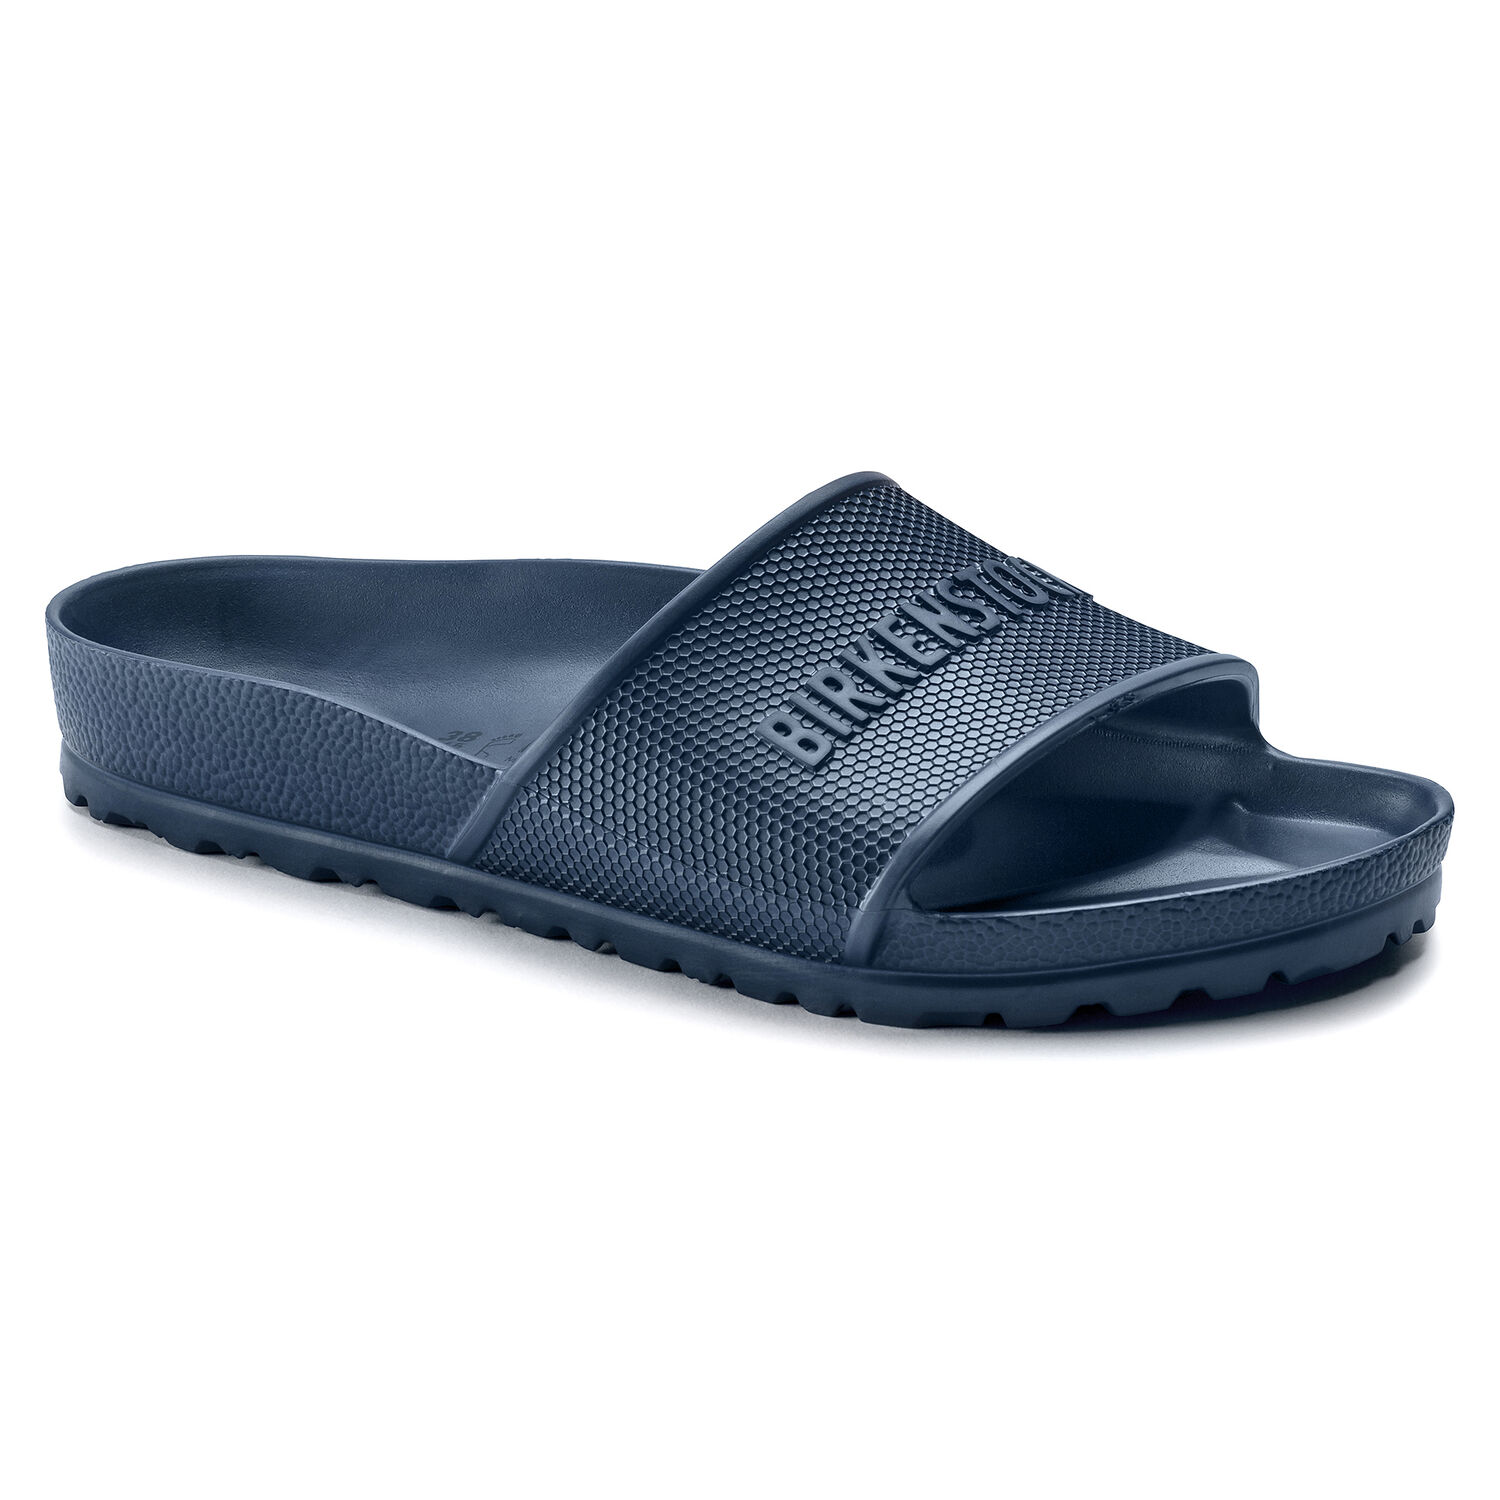 Buy Birkenstock Sandals Online | lazada.sg